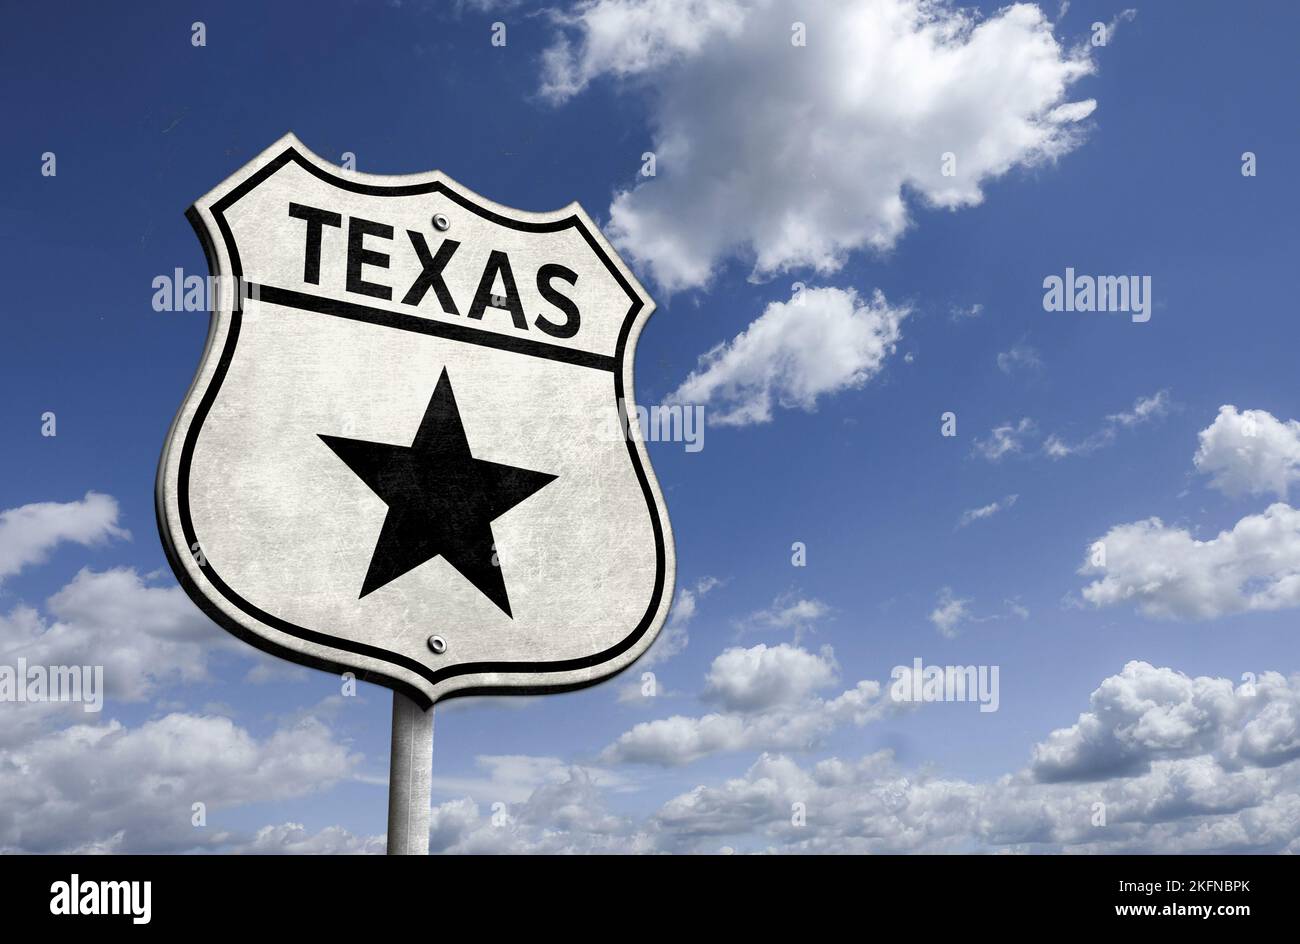 Texas - estado de la estrella solitaria - señal de tráfico Foto de stock